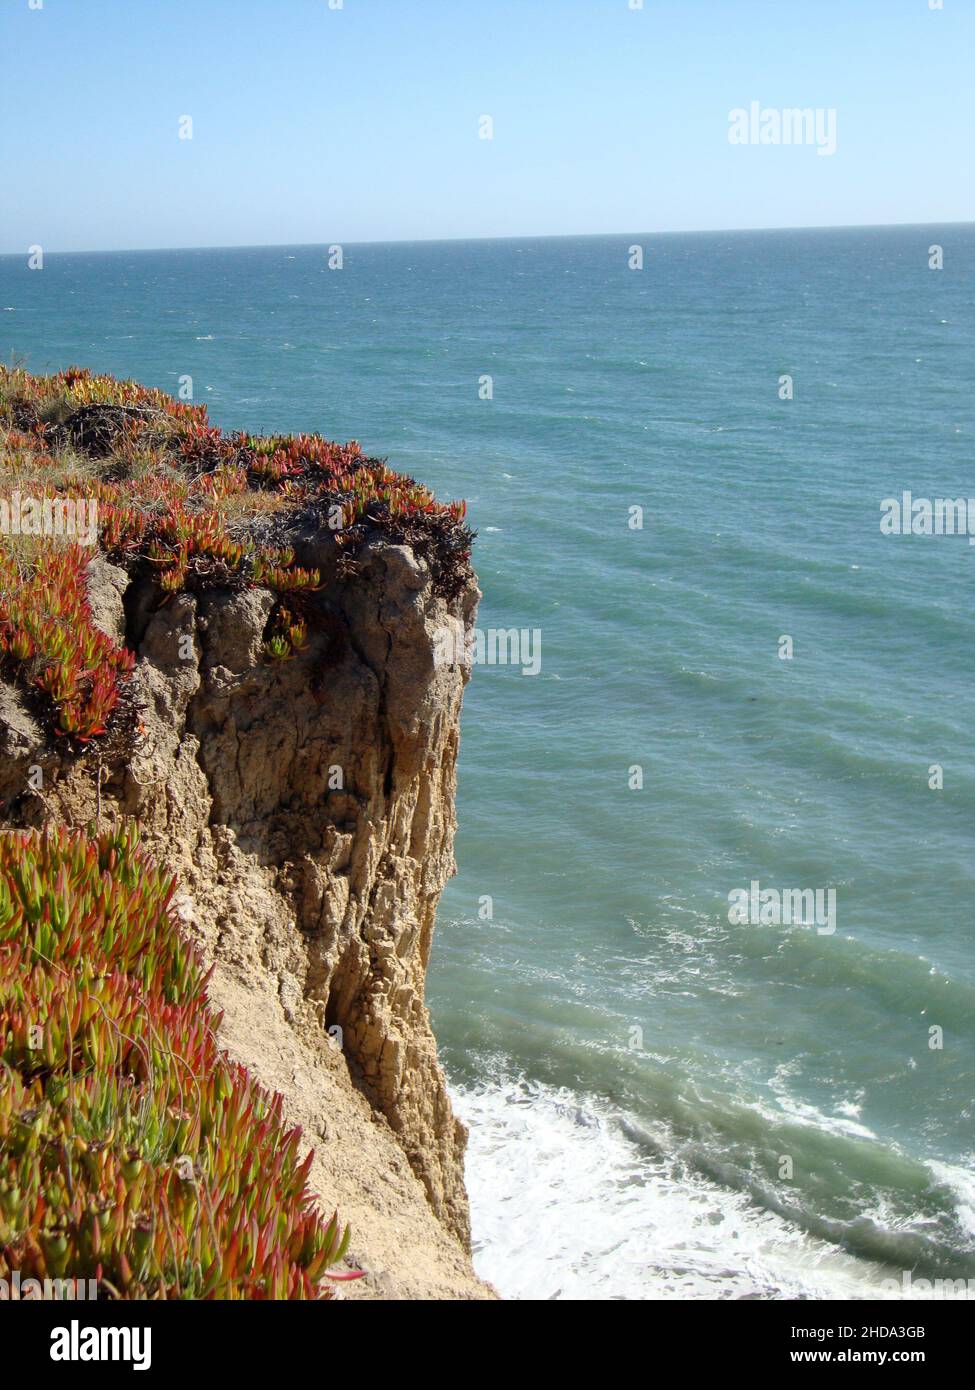 Foto di una scogliera con piante di ghiaccio che si affacciano sulle onde dell'oceano lungo la costa della California settentrionale, USA Foto Stock